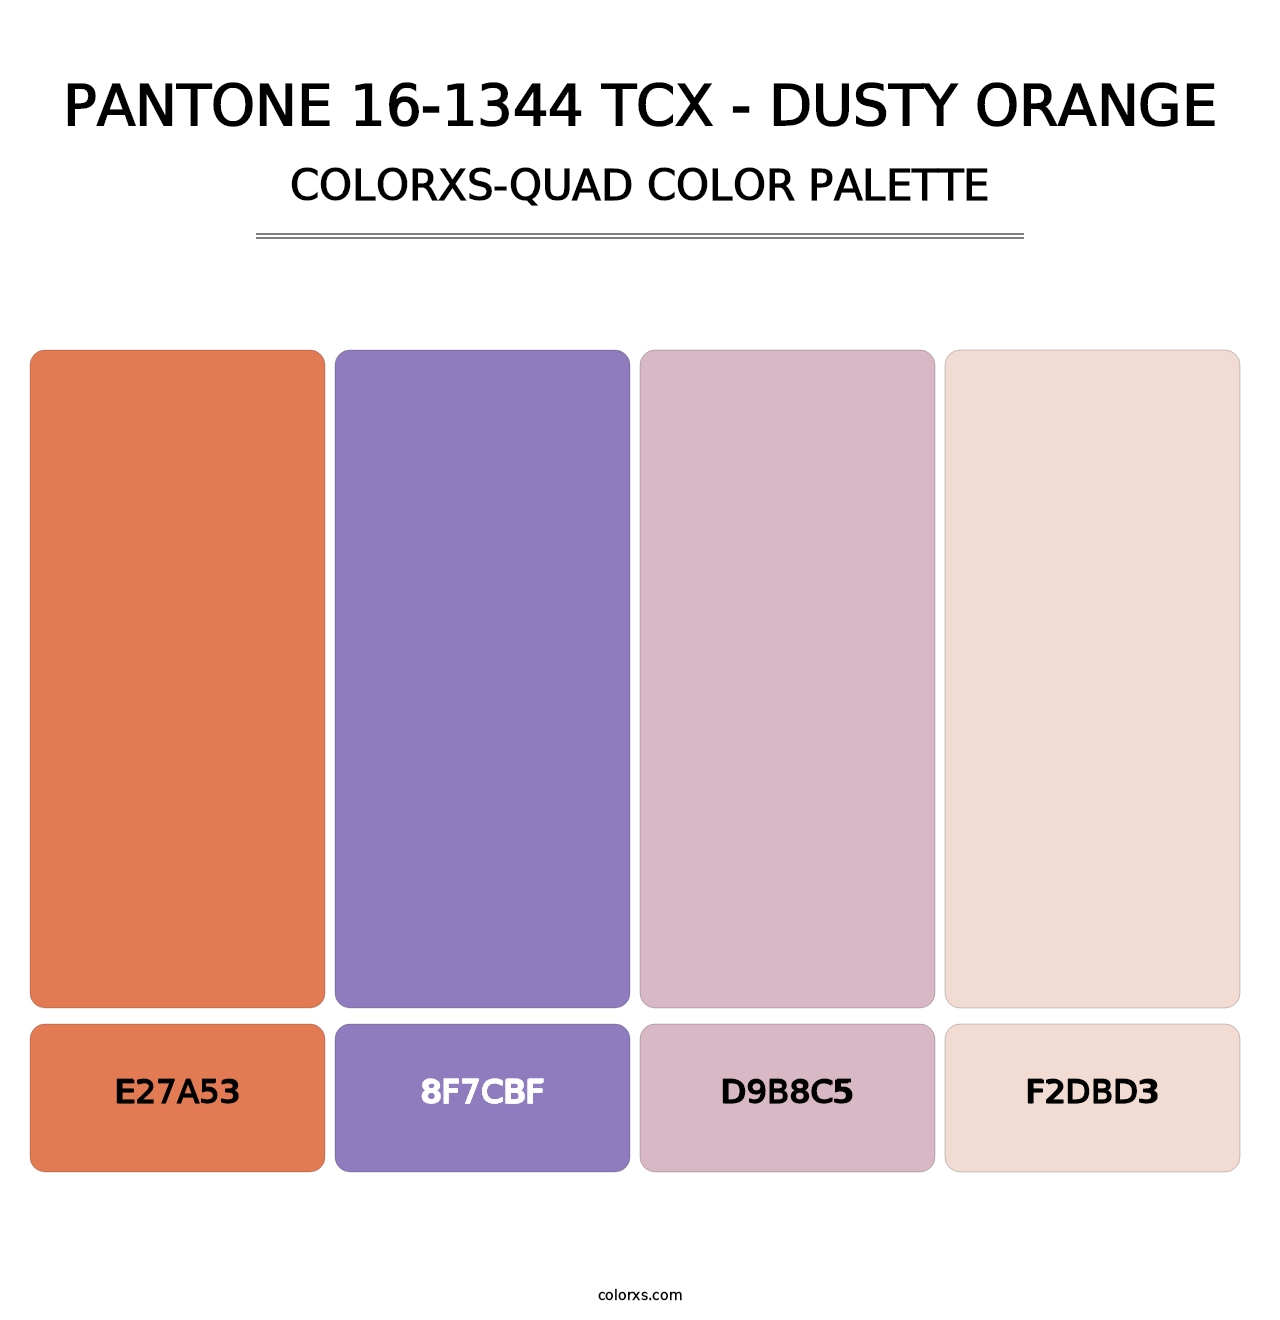 PANTONE 16-1344 TCX - Dusty Orange - Colorxs Quad Palette